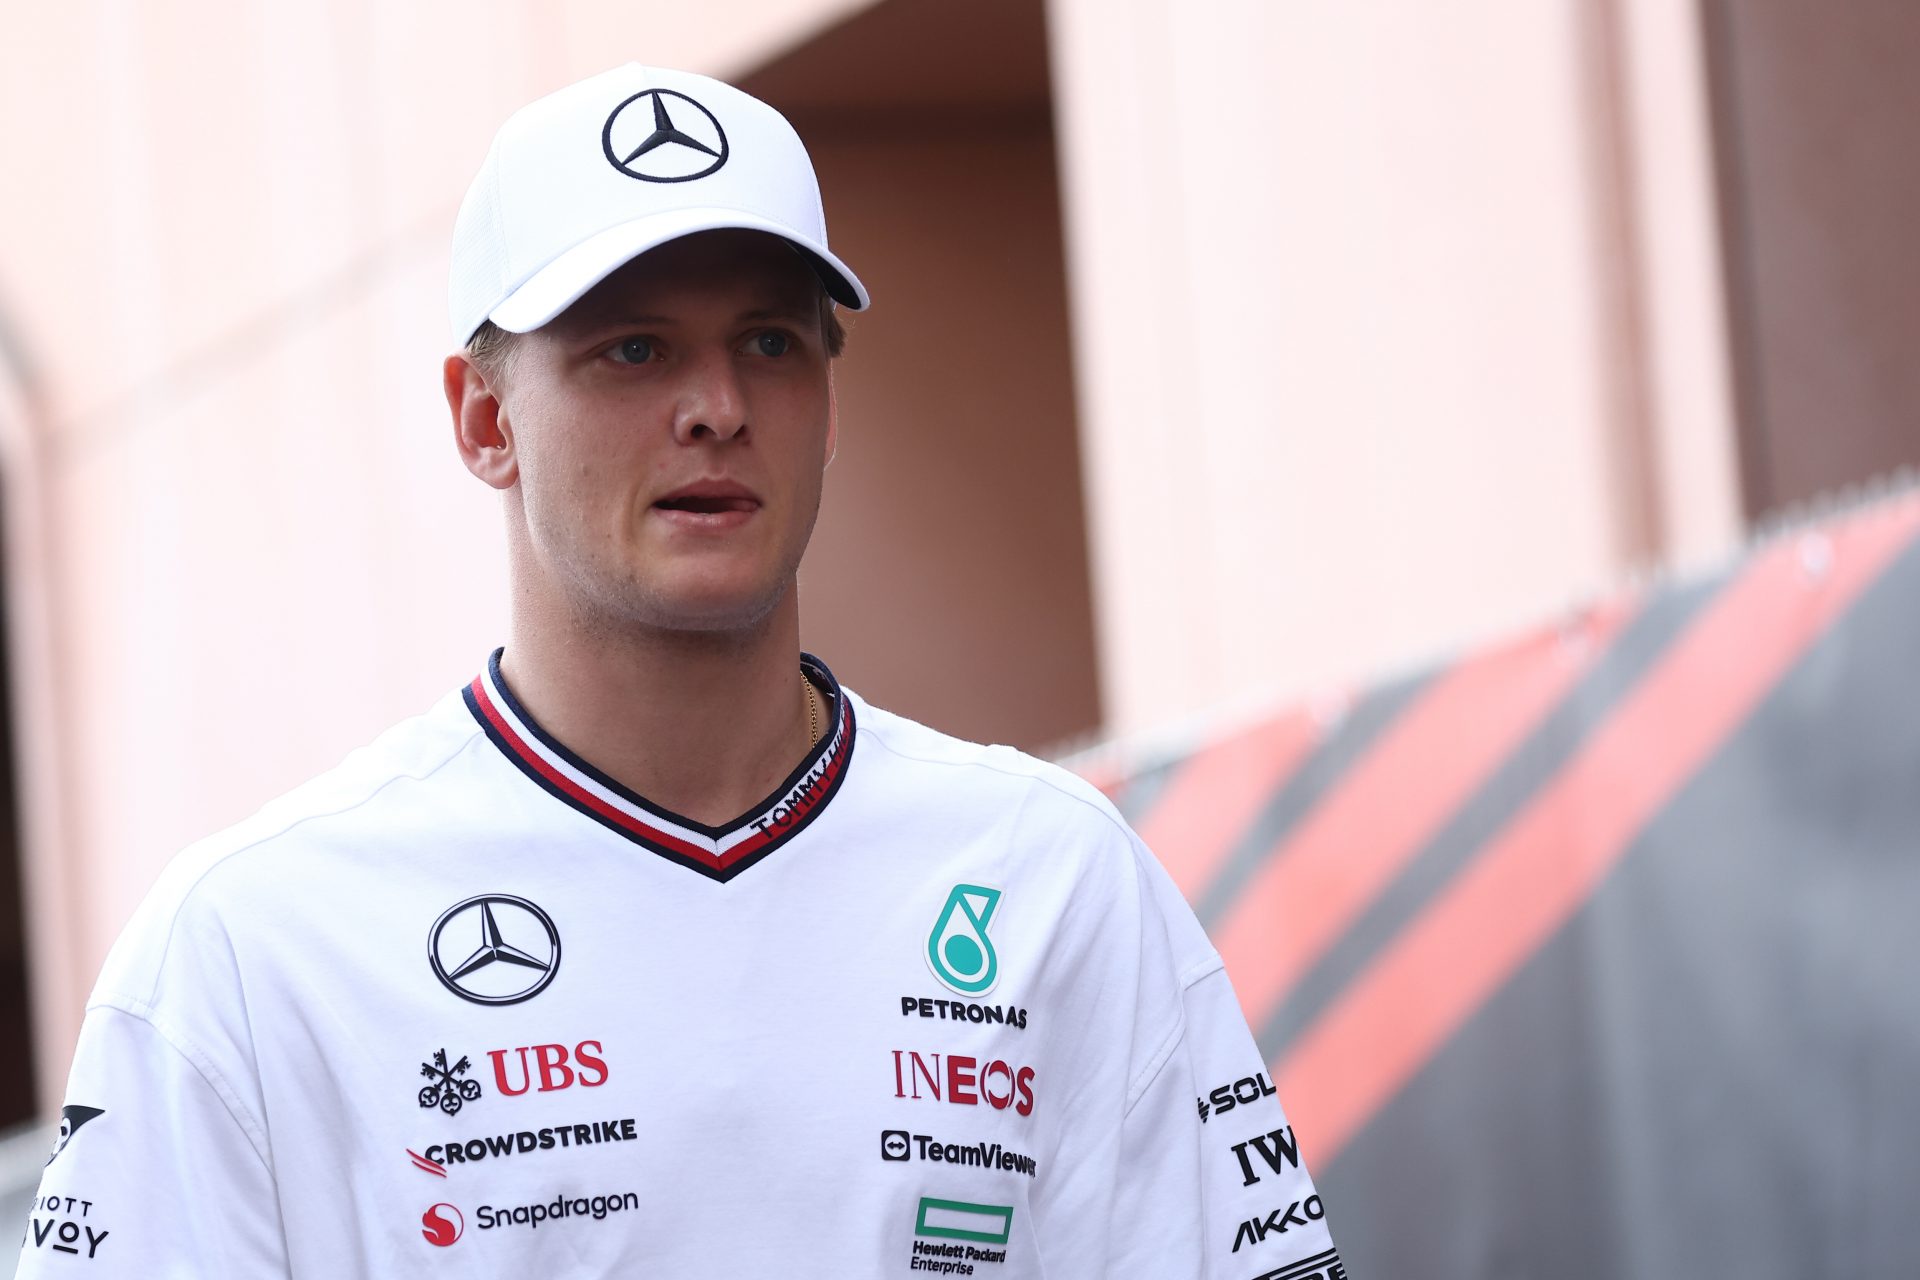 Mick Schumacher's drastic change in his racing career